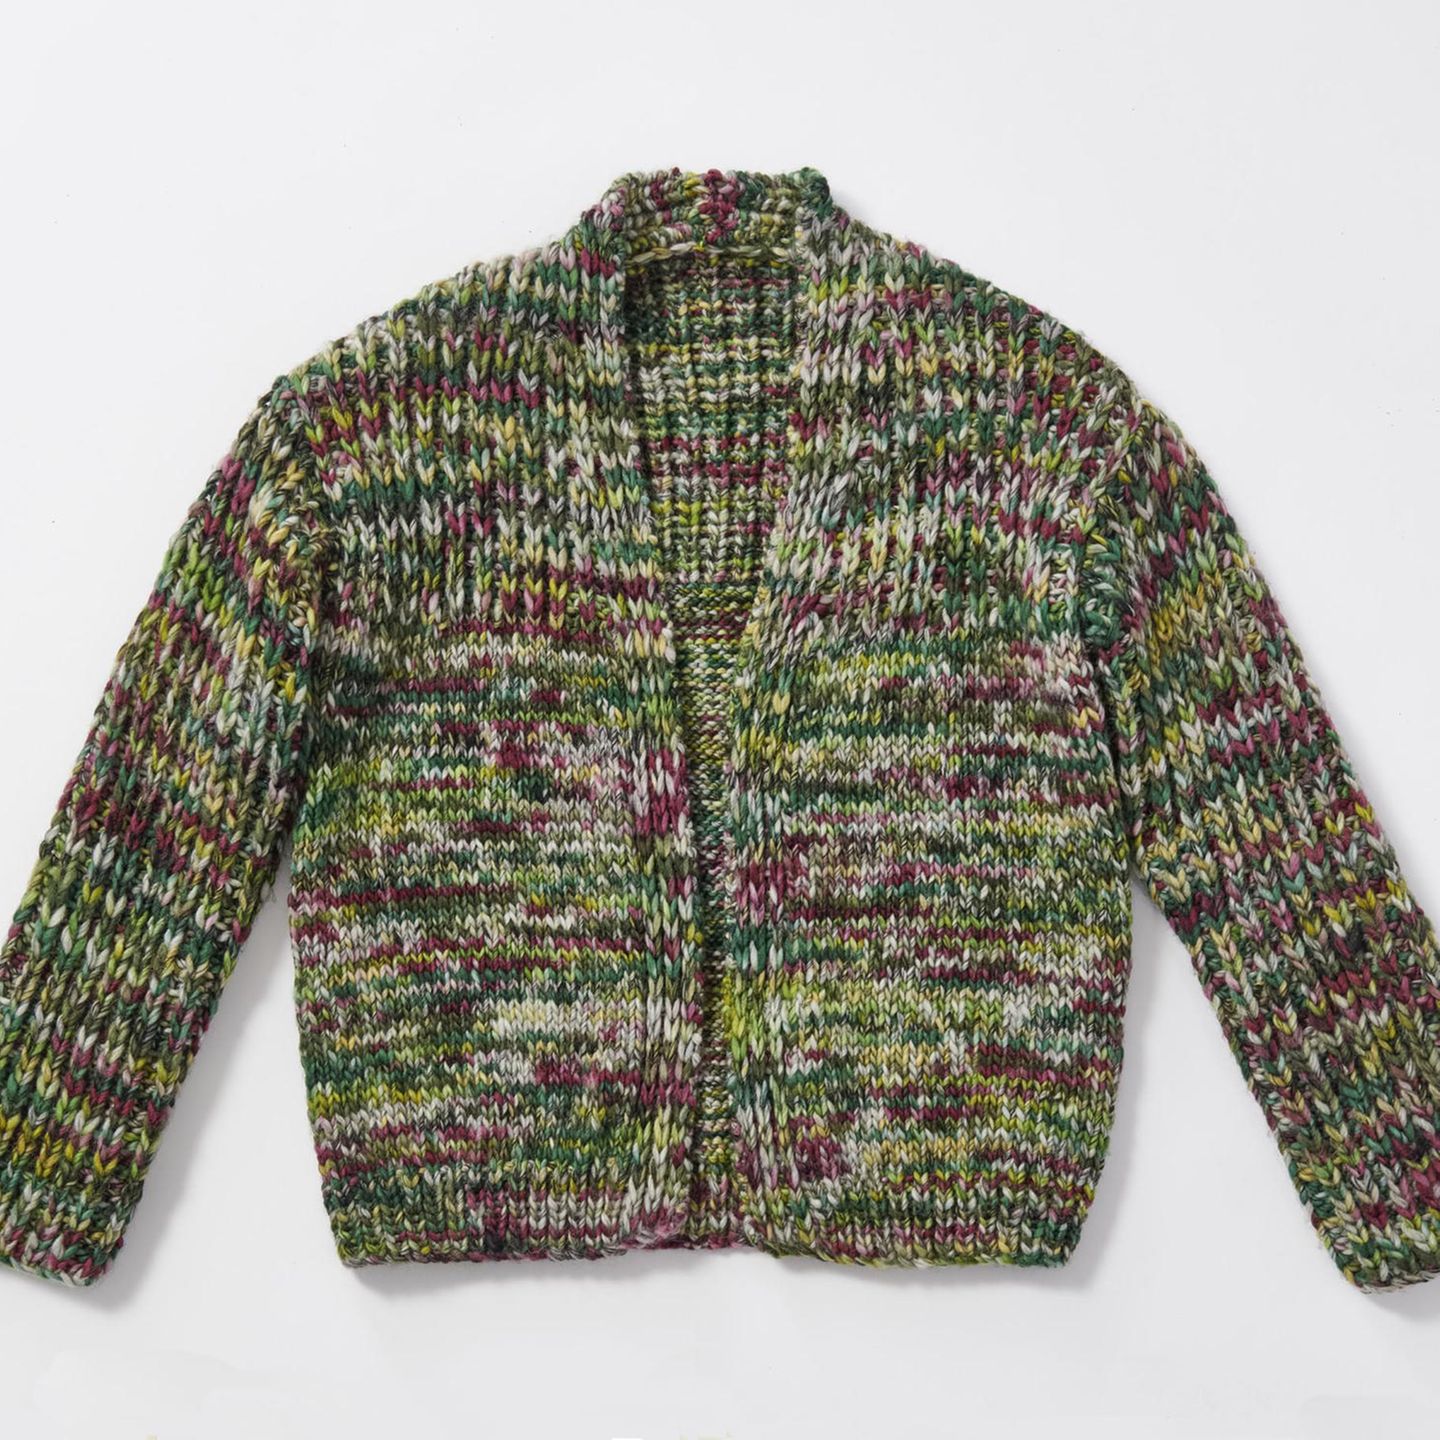 Grünmelierte Jacke stricken: Strickjacke in verschiedenen Farben